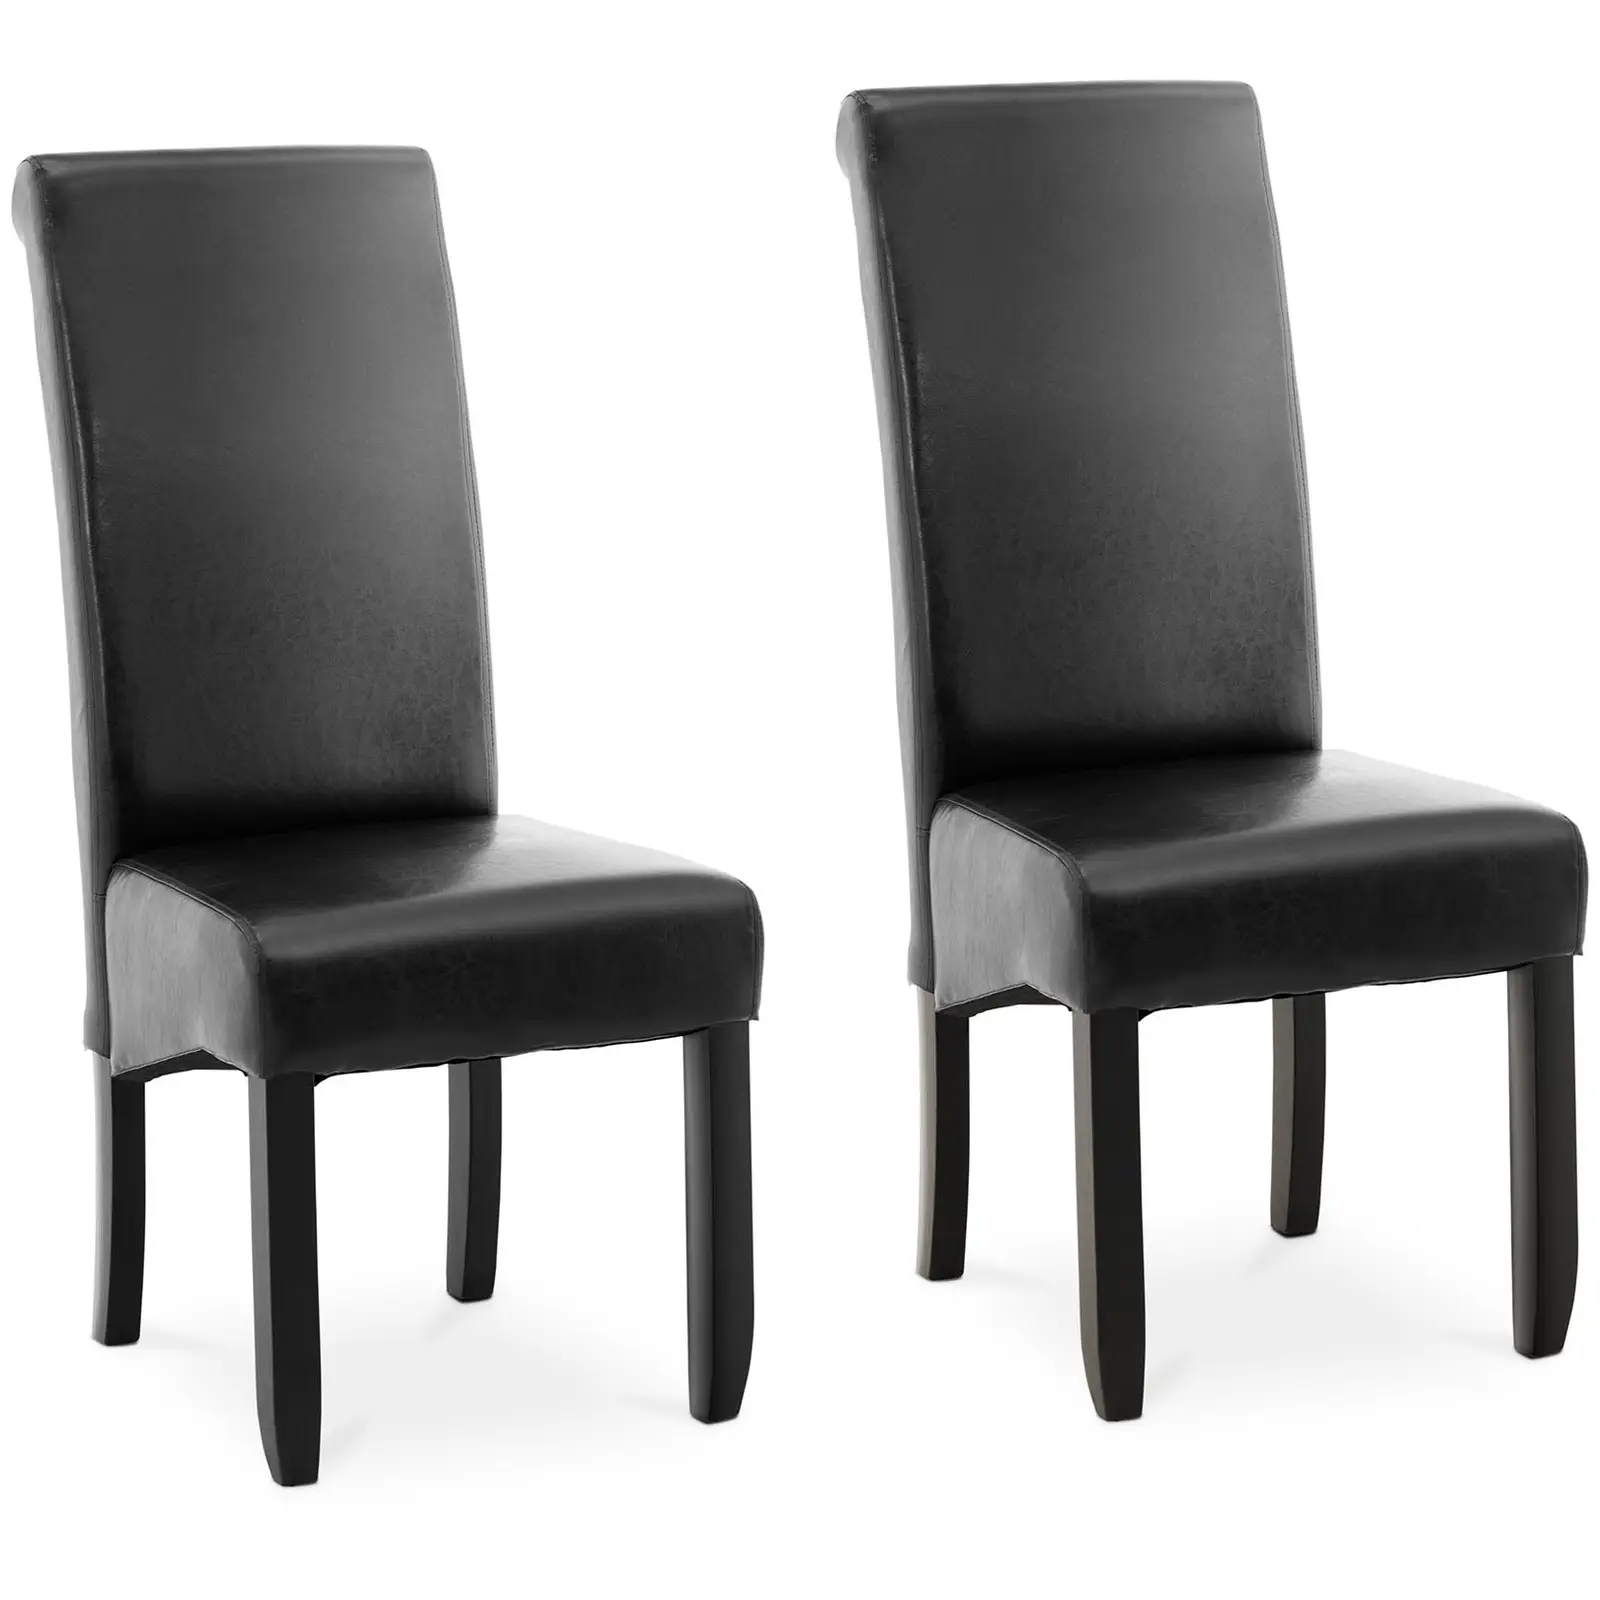 Čalouněná židle- sada 2 kusů - do 180 kg - sedací plocha 44,5 x 44 cm - černá